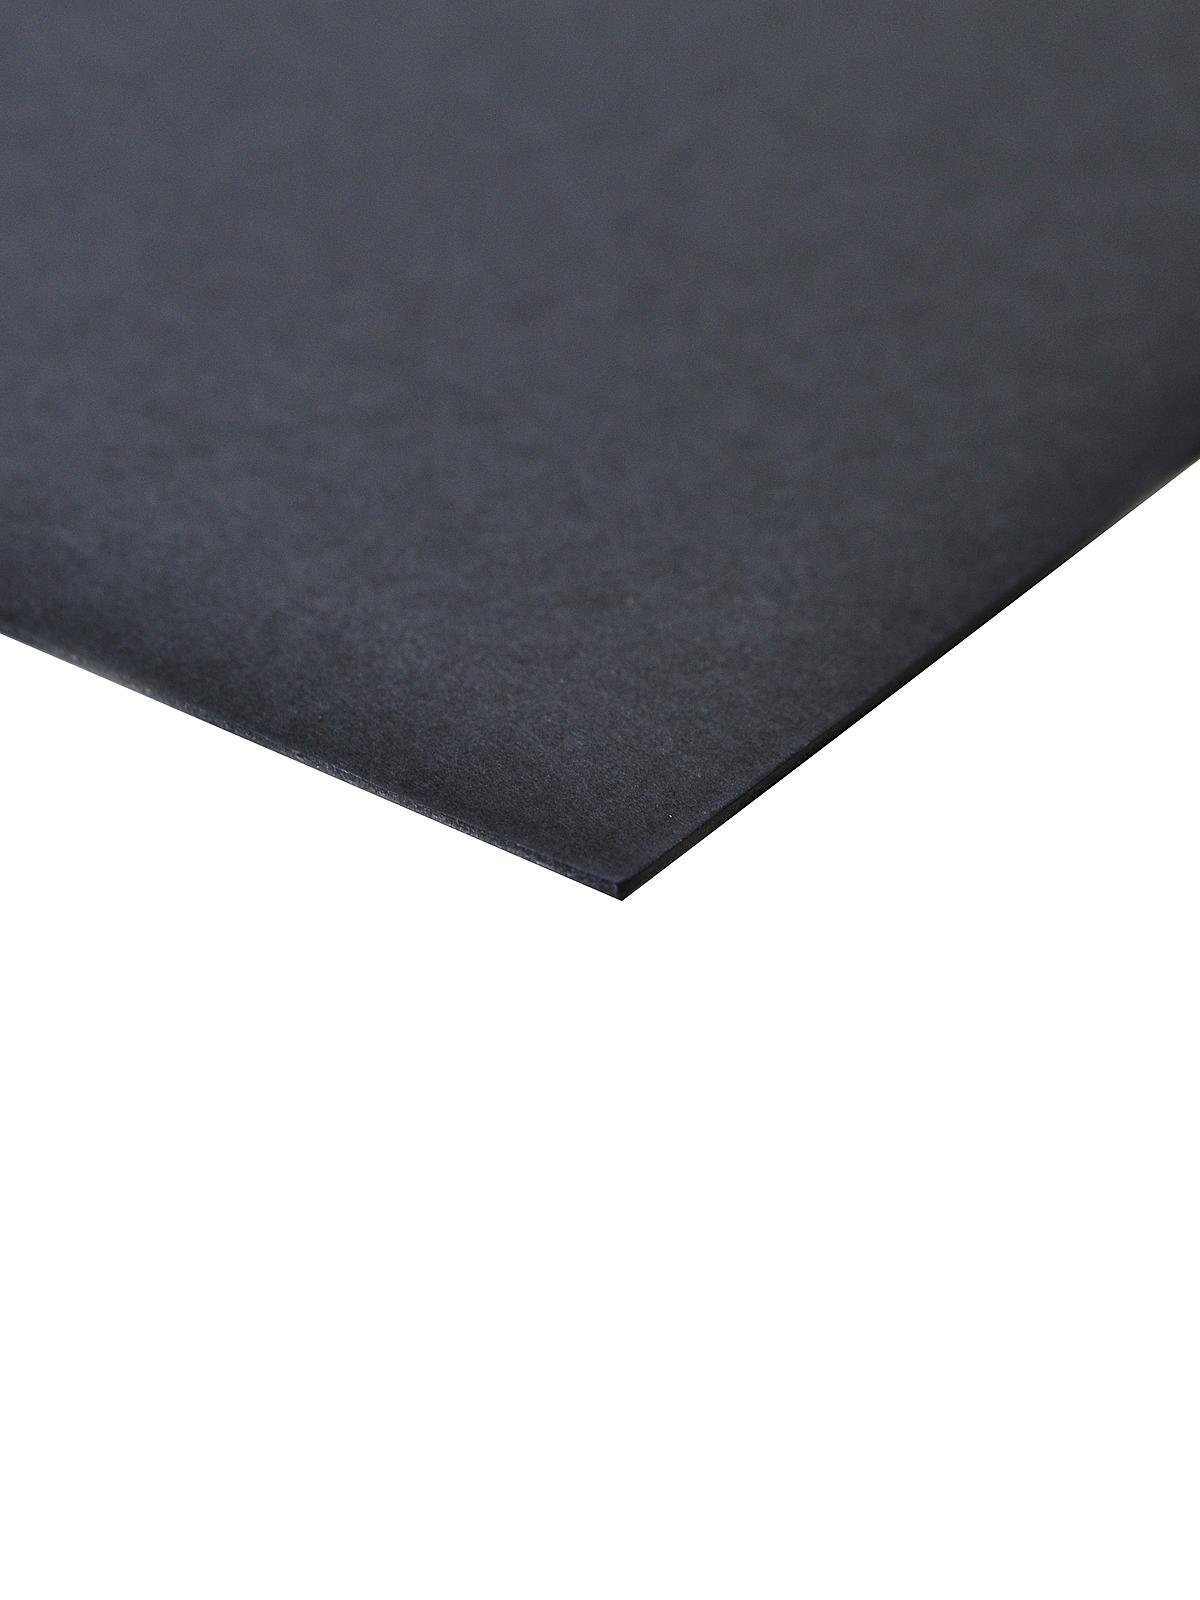 BAINBRIDGE® Black Foam Core Board